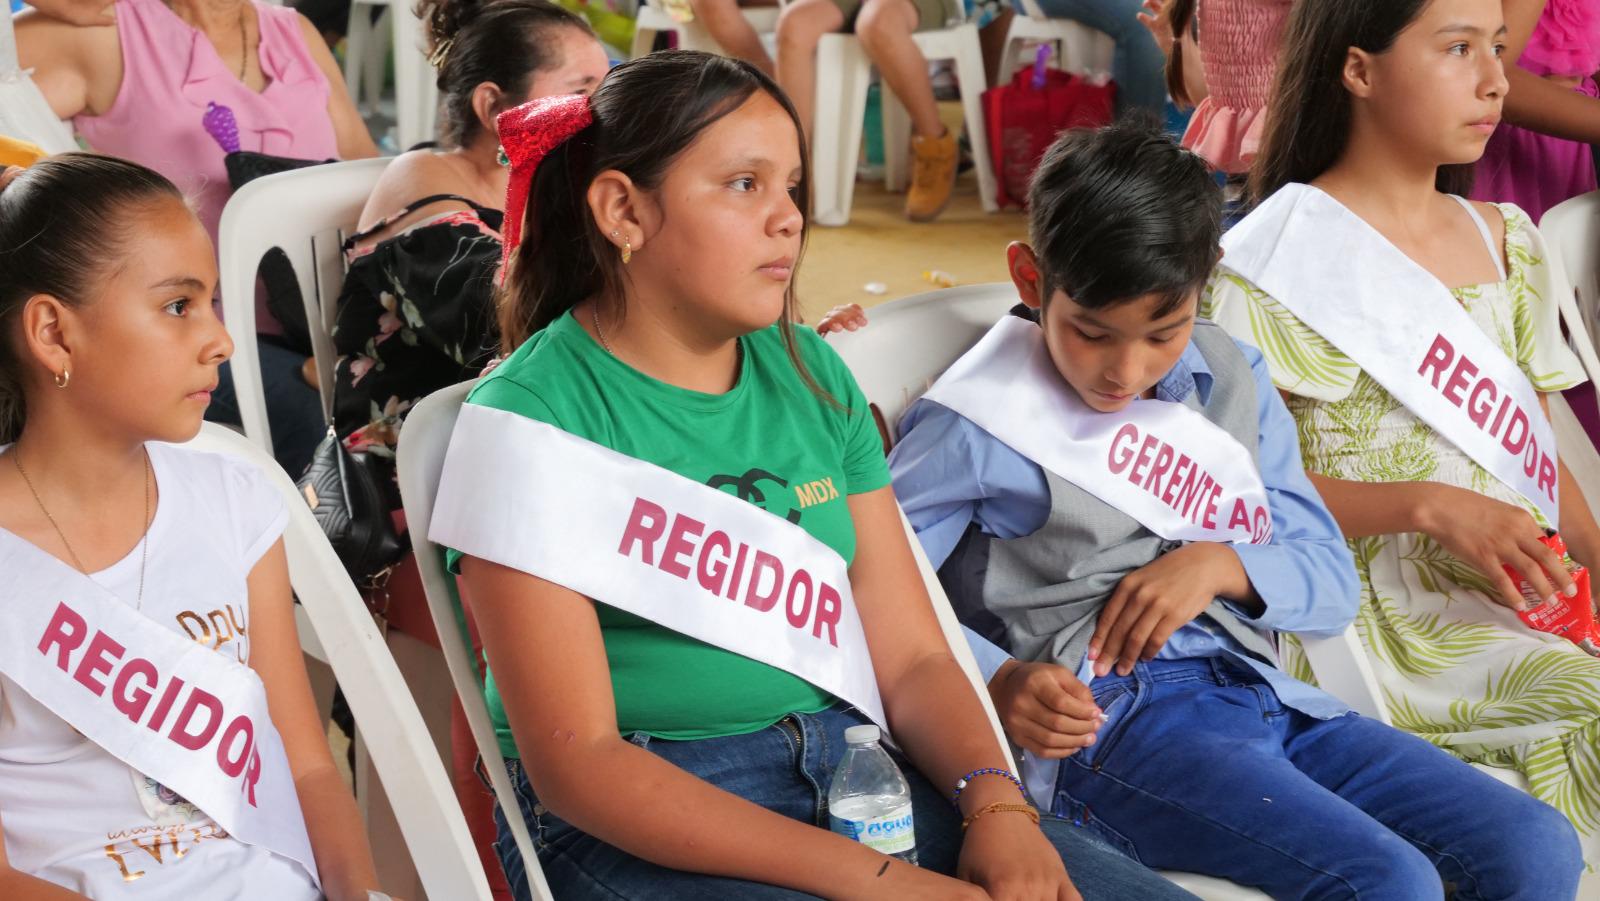 $!Celebran miles de pequeños el Día de los Niño en Rosario